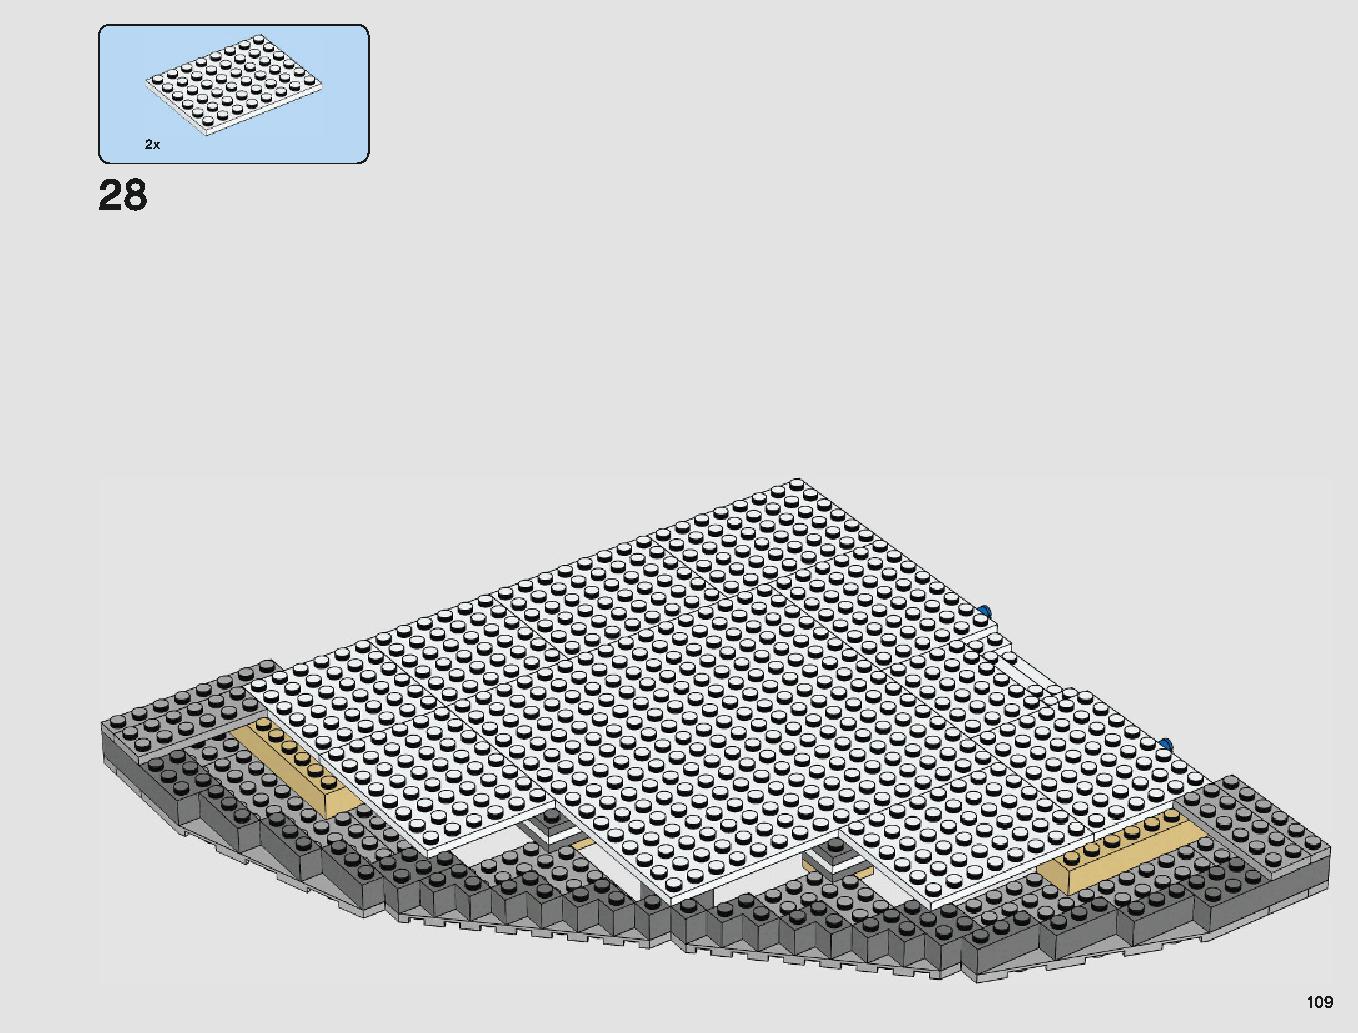 クラウド・シティ 75222 レゴの商品情報 レゴの説明書・組立方法 109 page